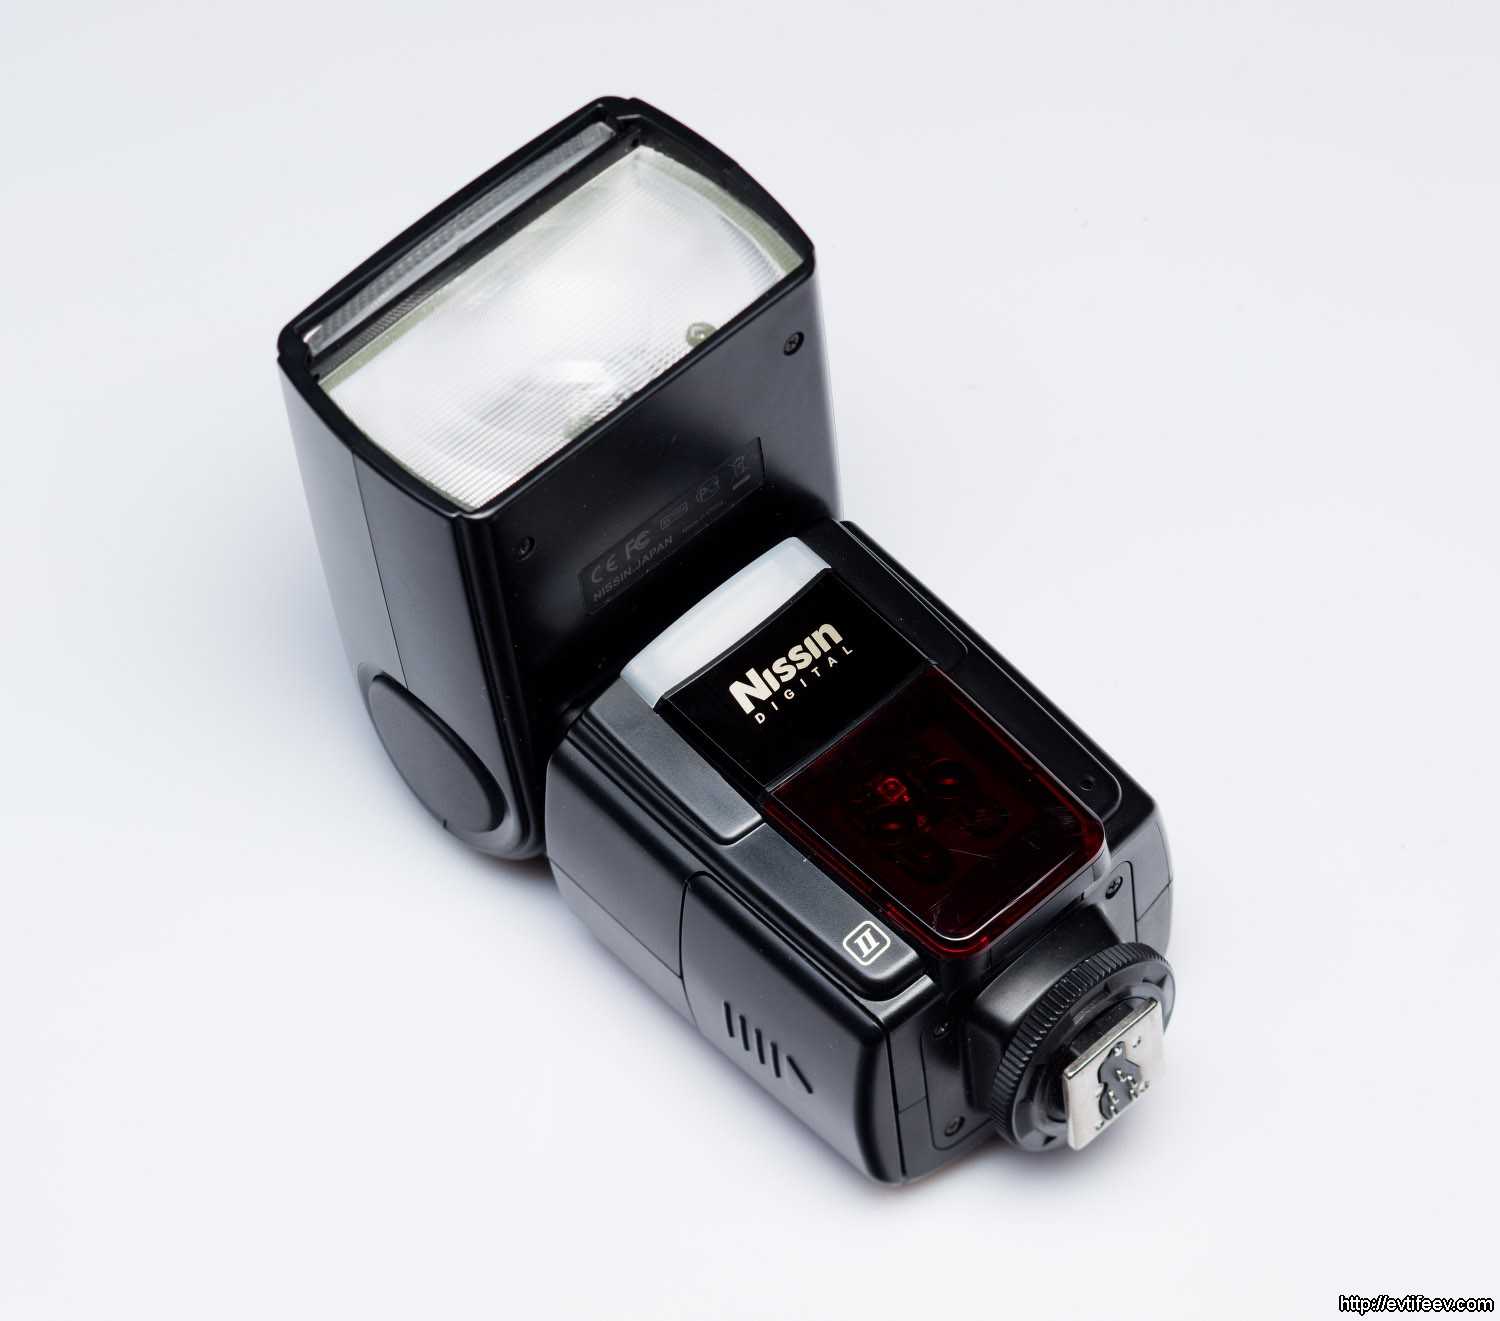 Фотовспышка Nissin Di-866 Mark II for Sony - подробные характеристики обзоры видео фото Цены в интернет-магазинах где можно купить фотовспышку Nissin Di-866 Mark II for Sony